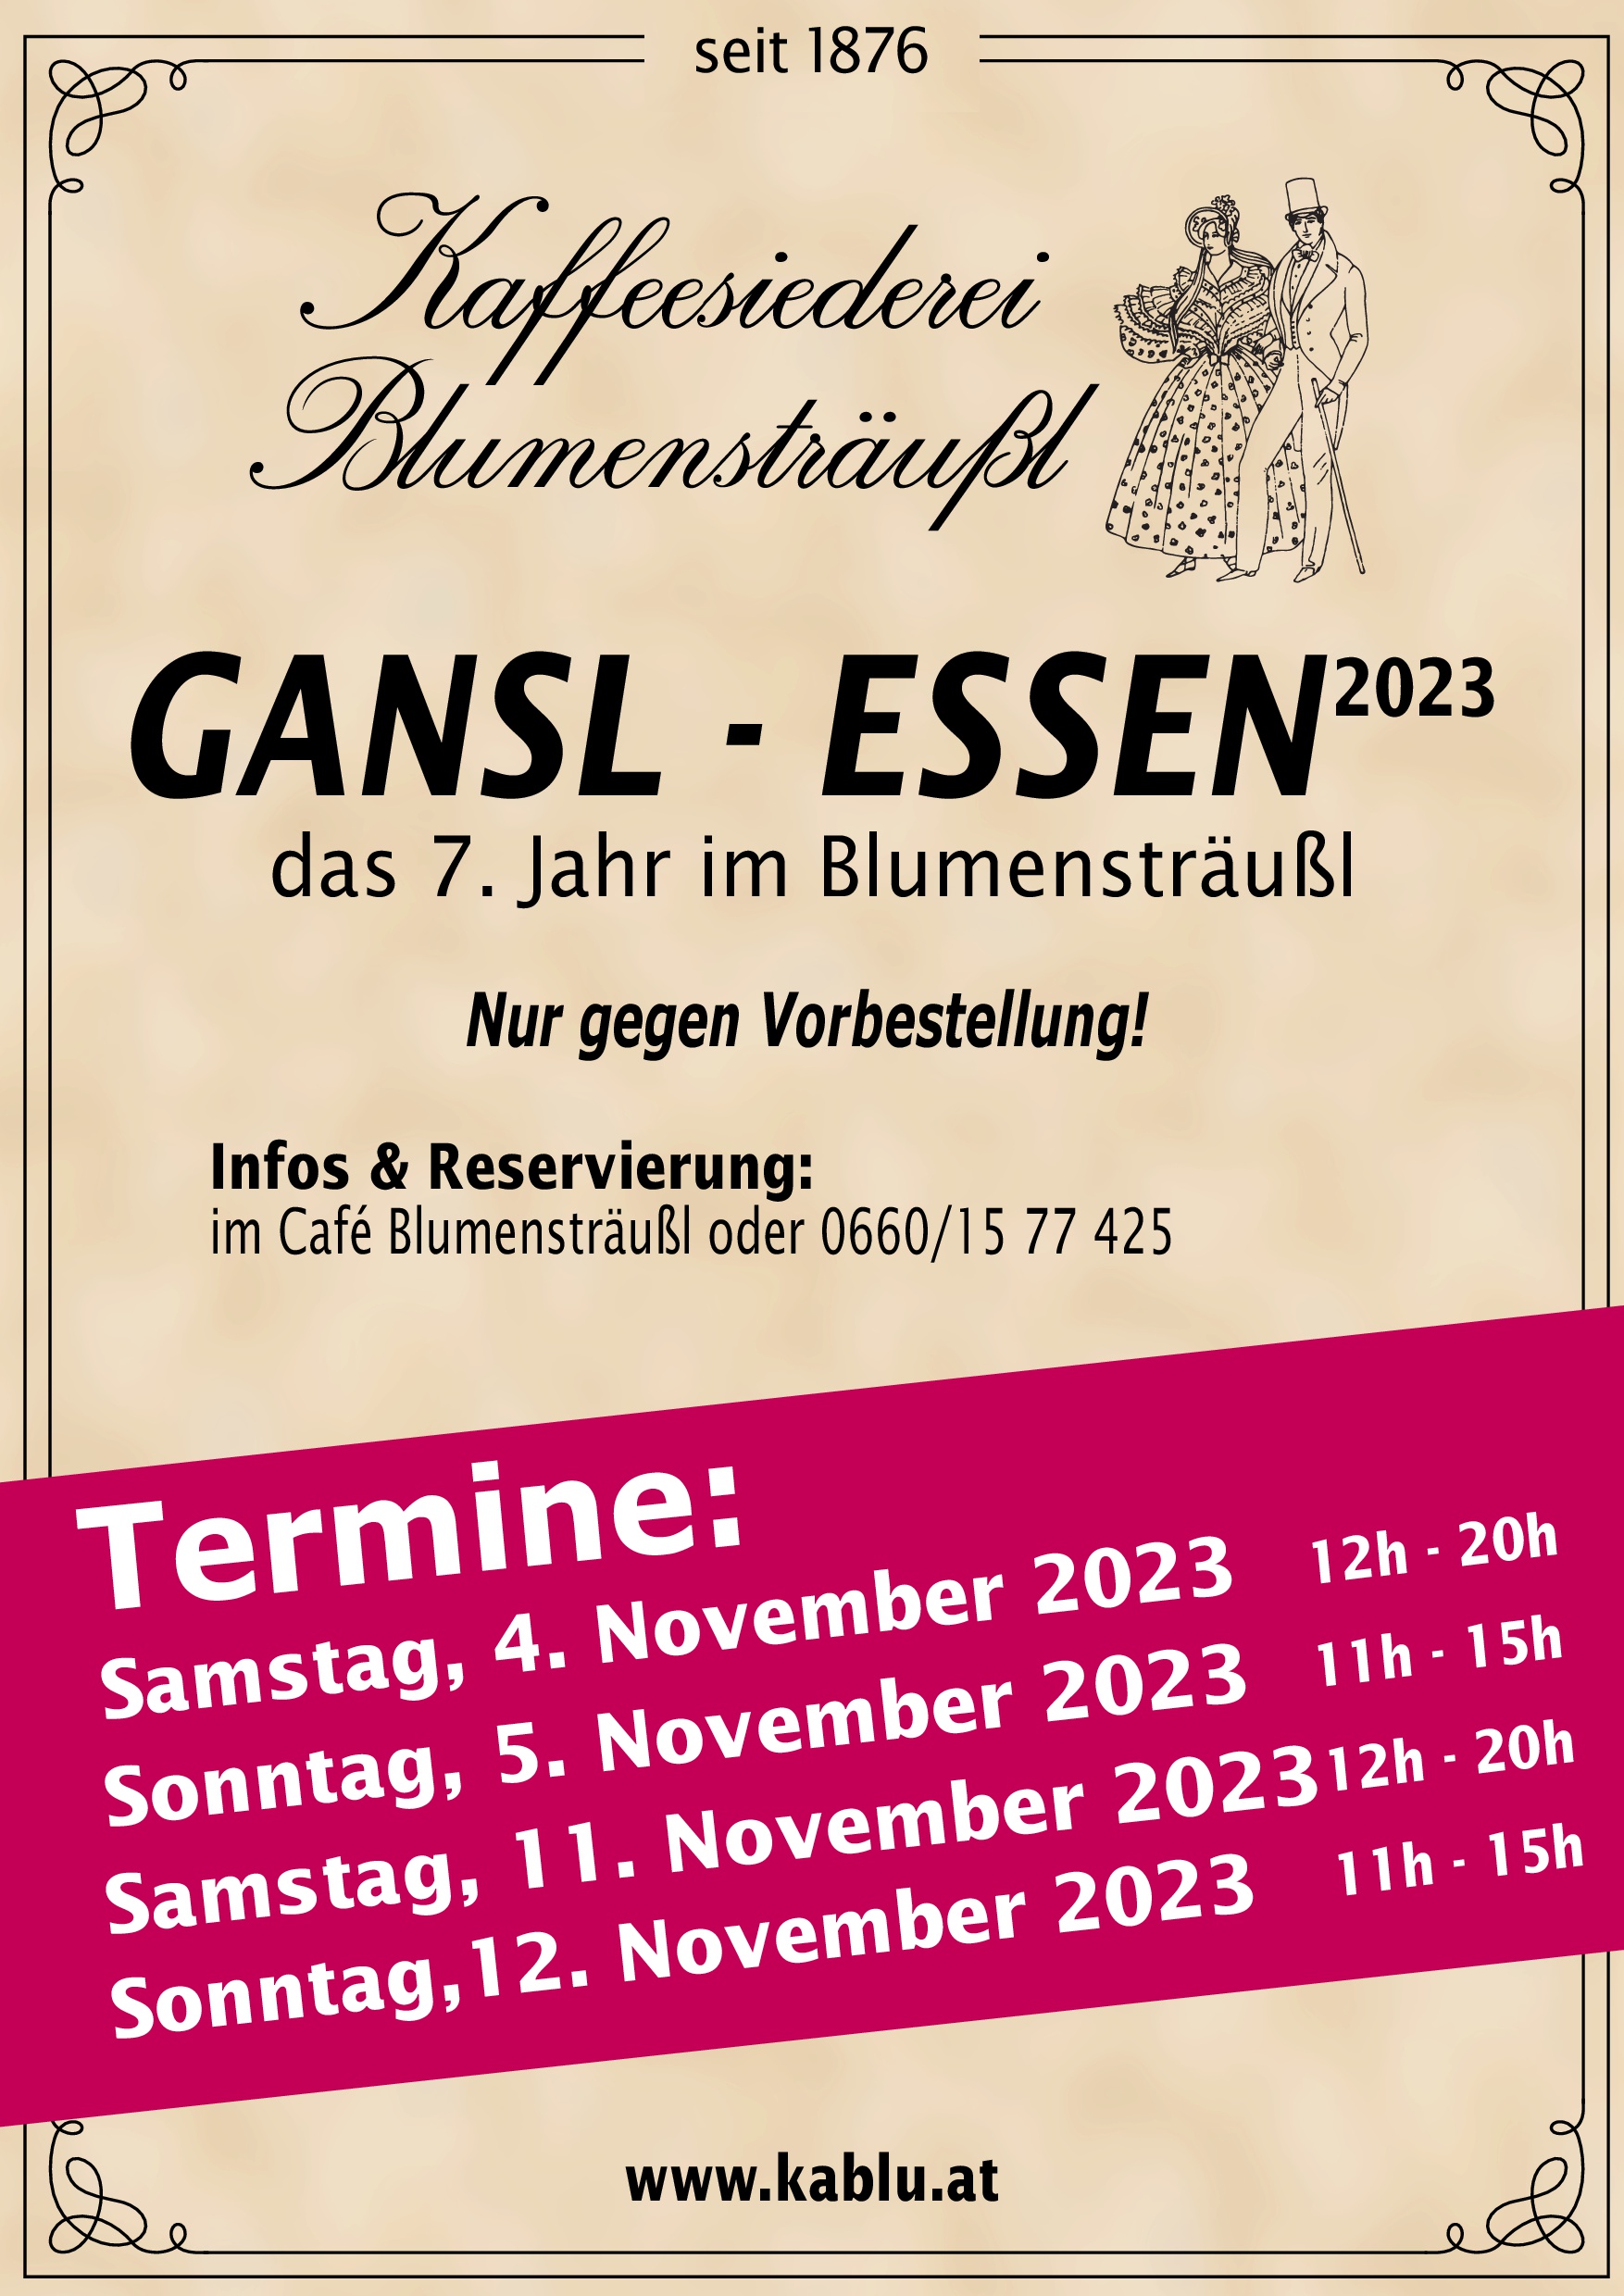 Gansl-Essen 2023